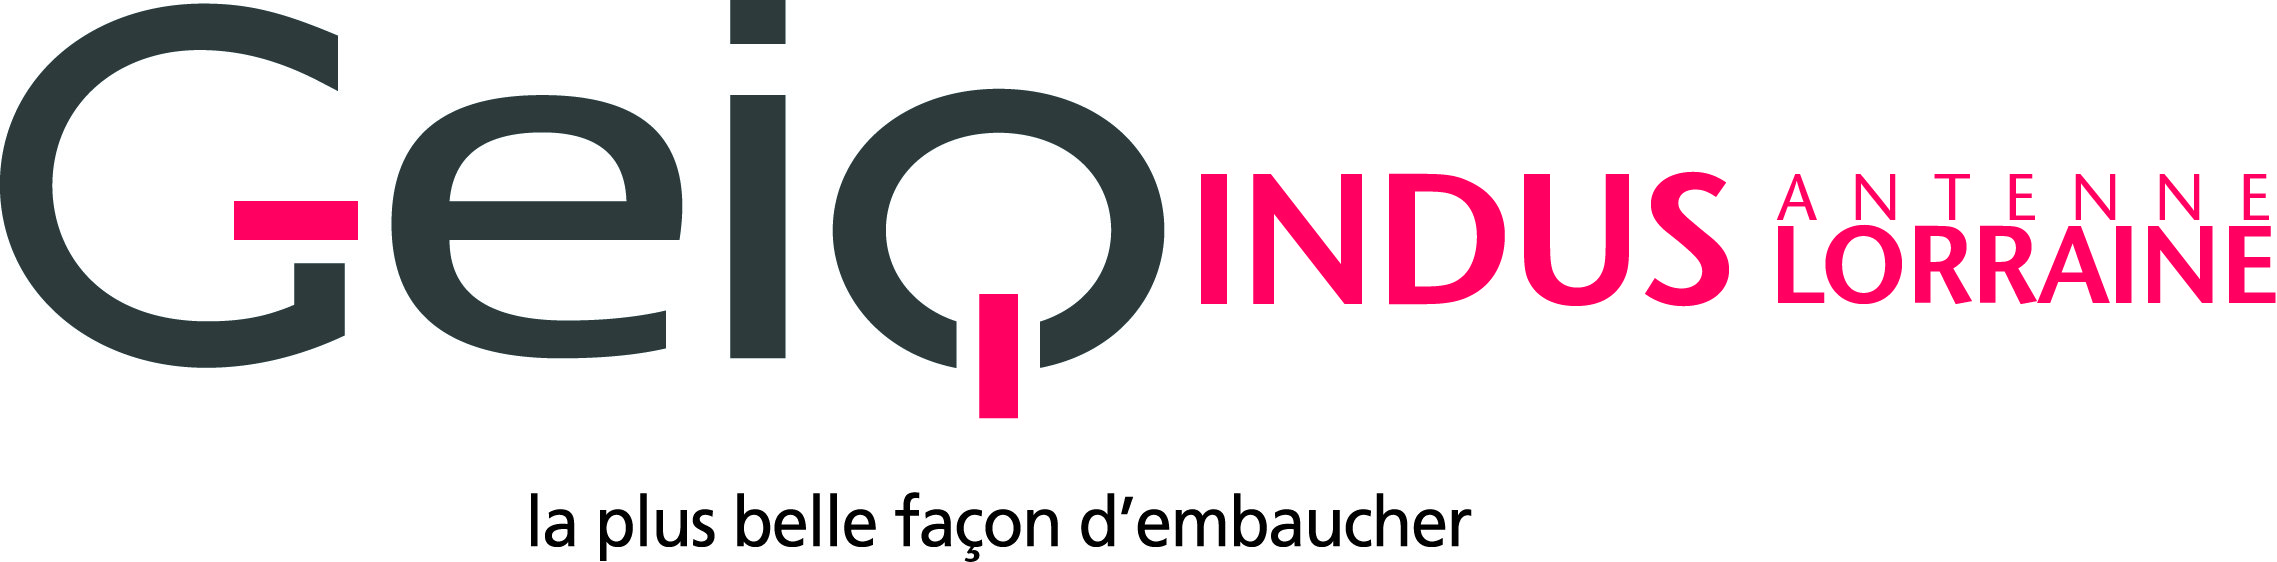 GEIQ_INDUS_Lorraine_logo